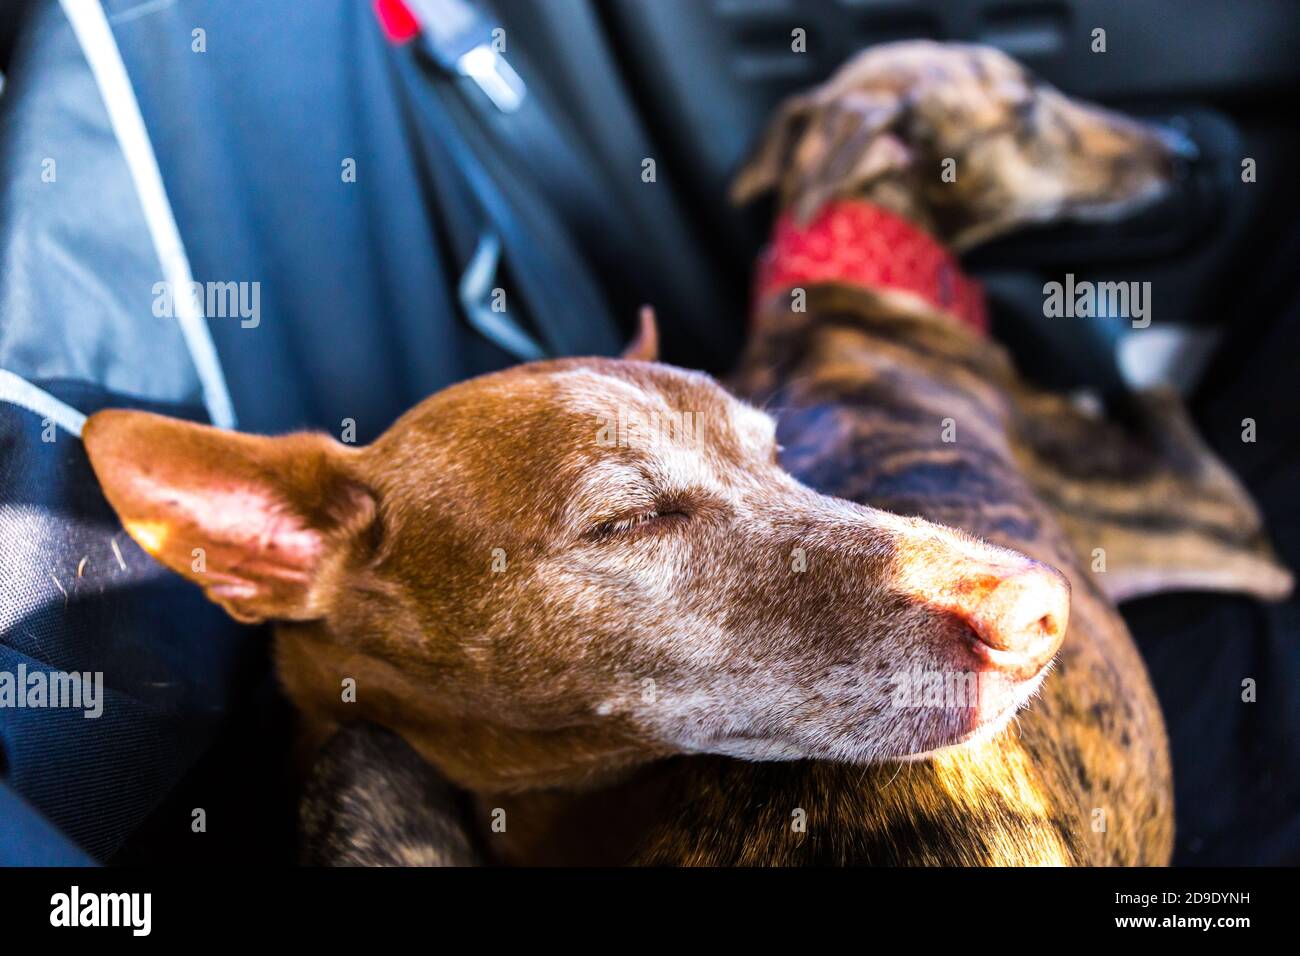 Cane di Podenco andaluso maschile su una femmina spagnola Greyhound Galgo su un sedile posteriore in auto Foto Stock